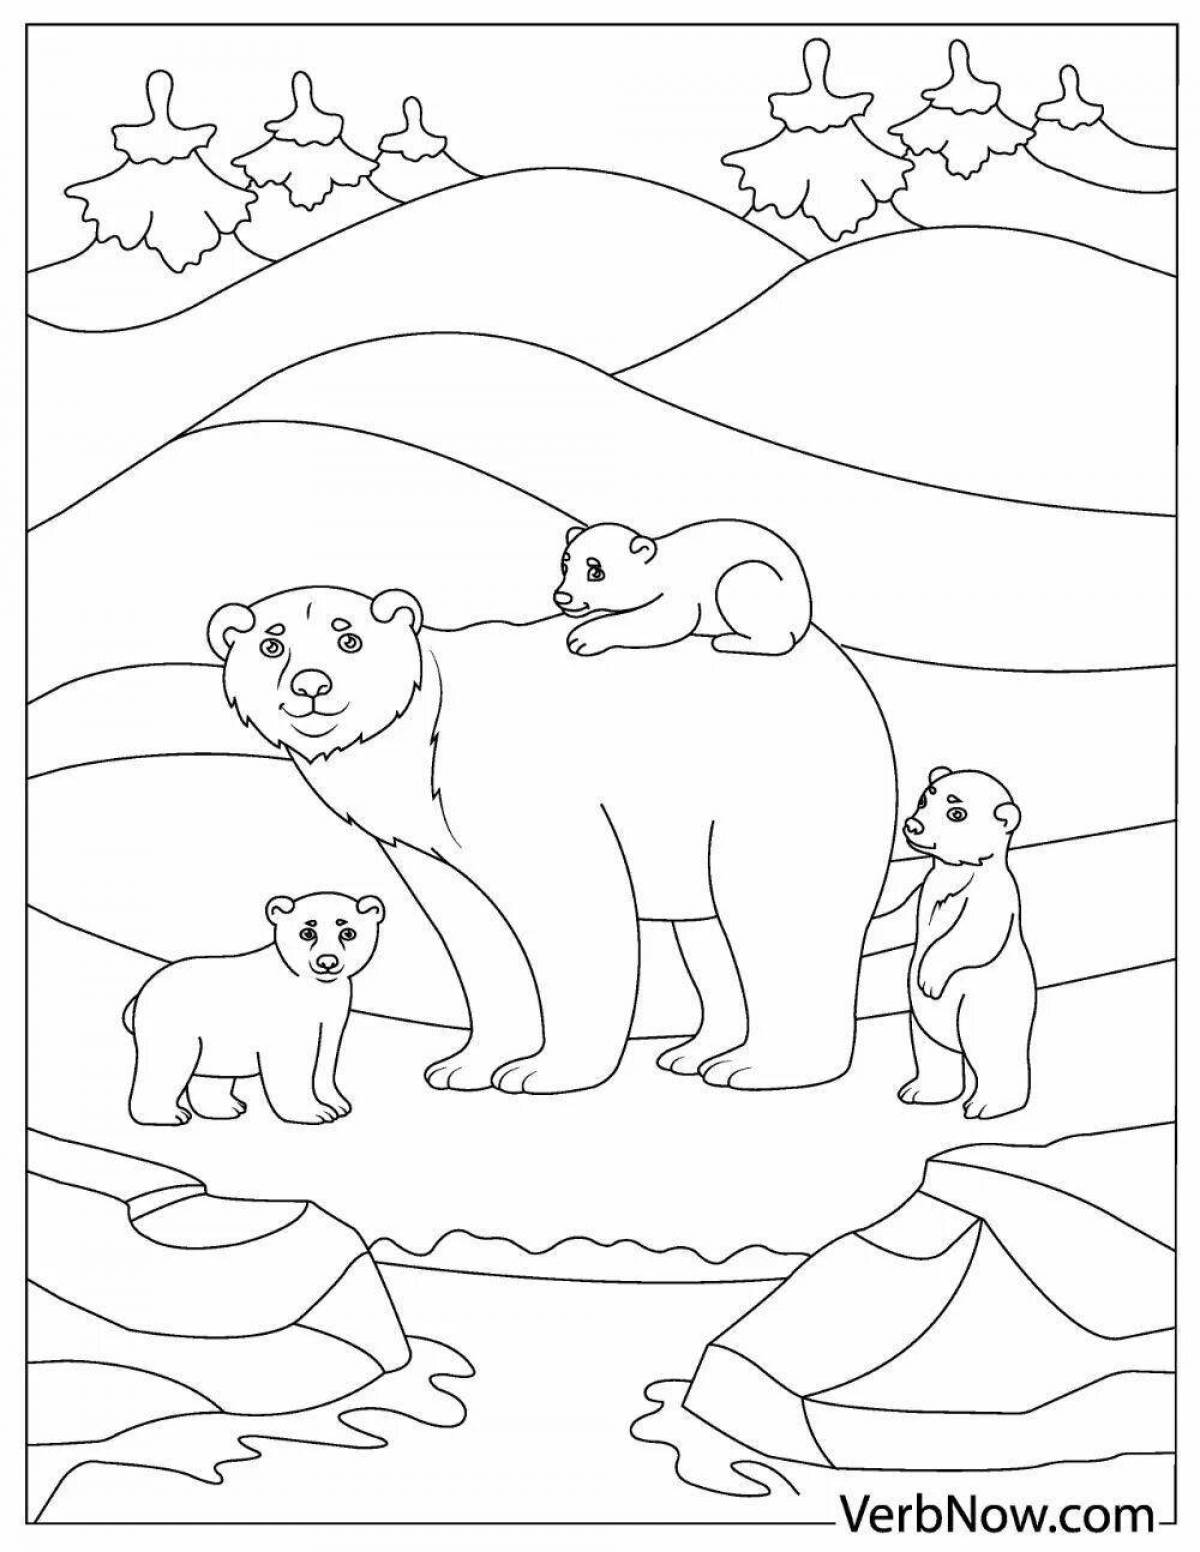 Colorful umka and bear coloring book